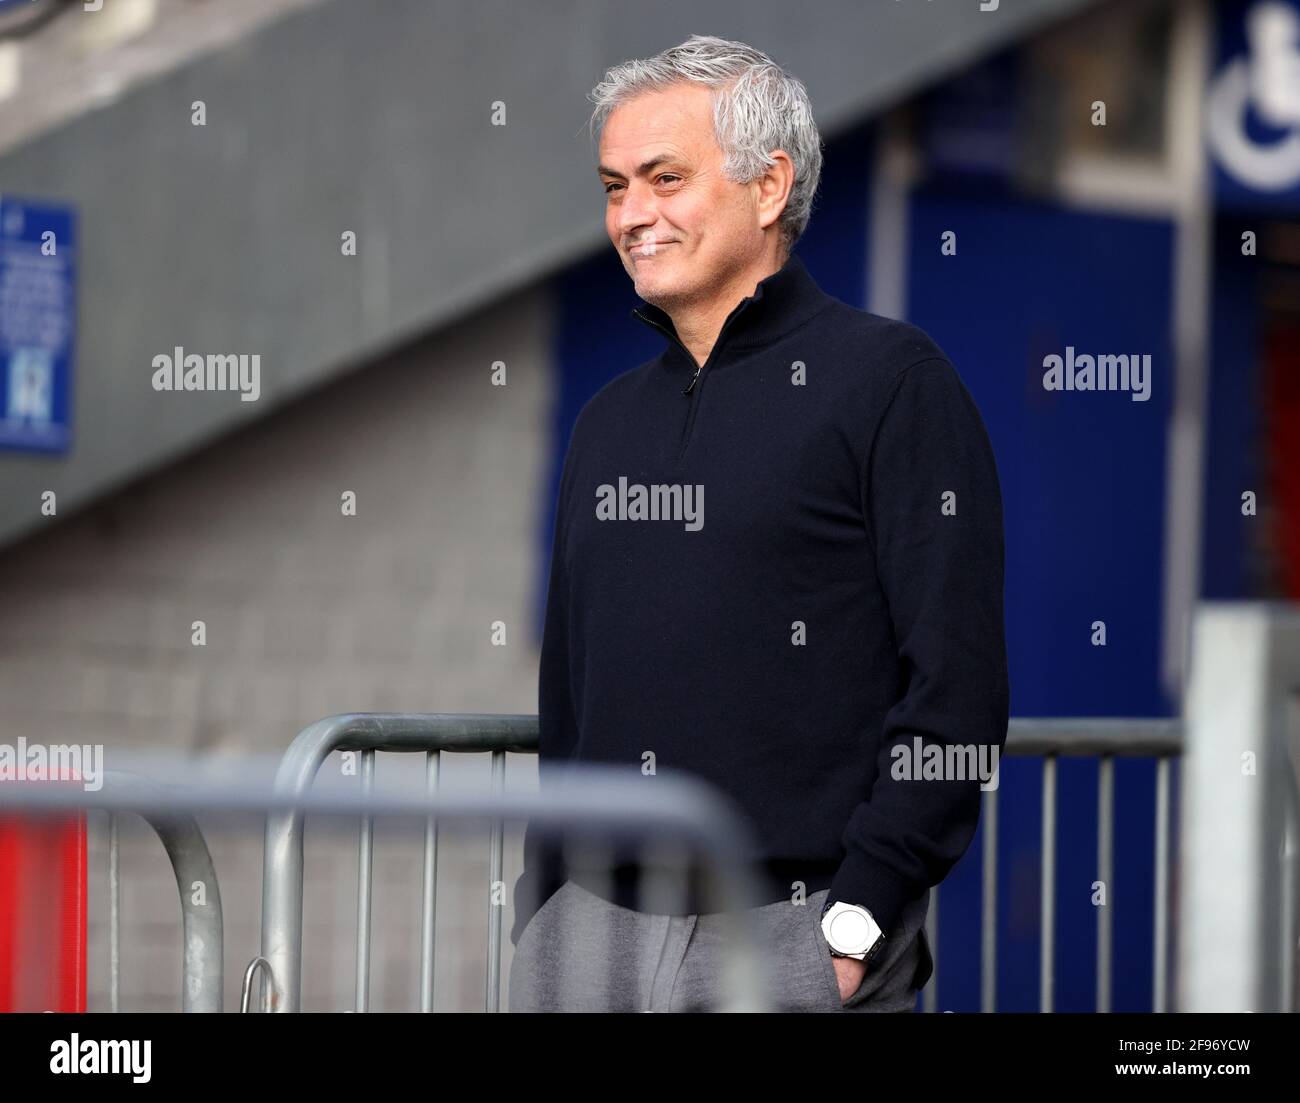 Il manager di Tottenham Hotspur Jose Mourinho sorride mentre parla con un amministratore di sicurezza di Everton prima della partita della Premier League al Goodison Park, Liverpool. Data immagine: Venerdì 16 aprile 2021. Foto Stock